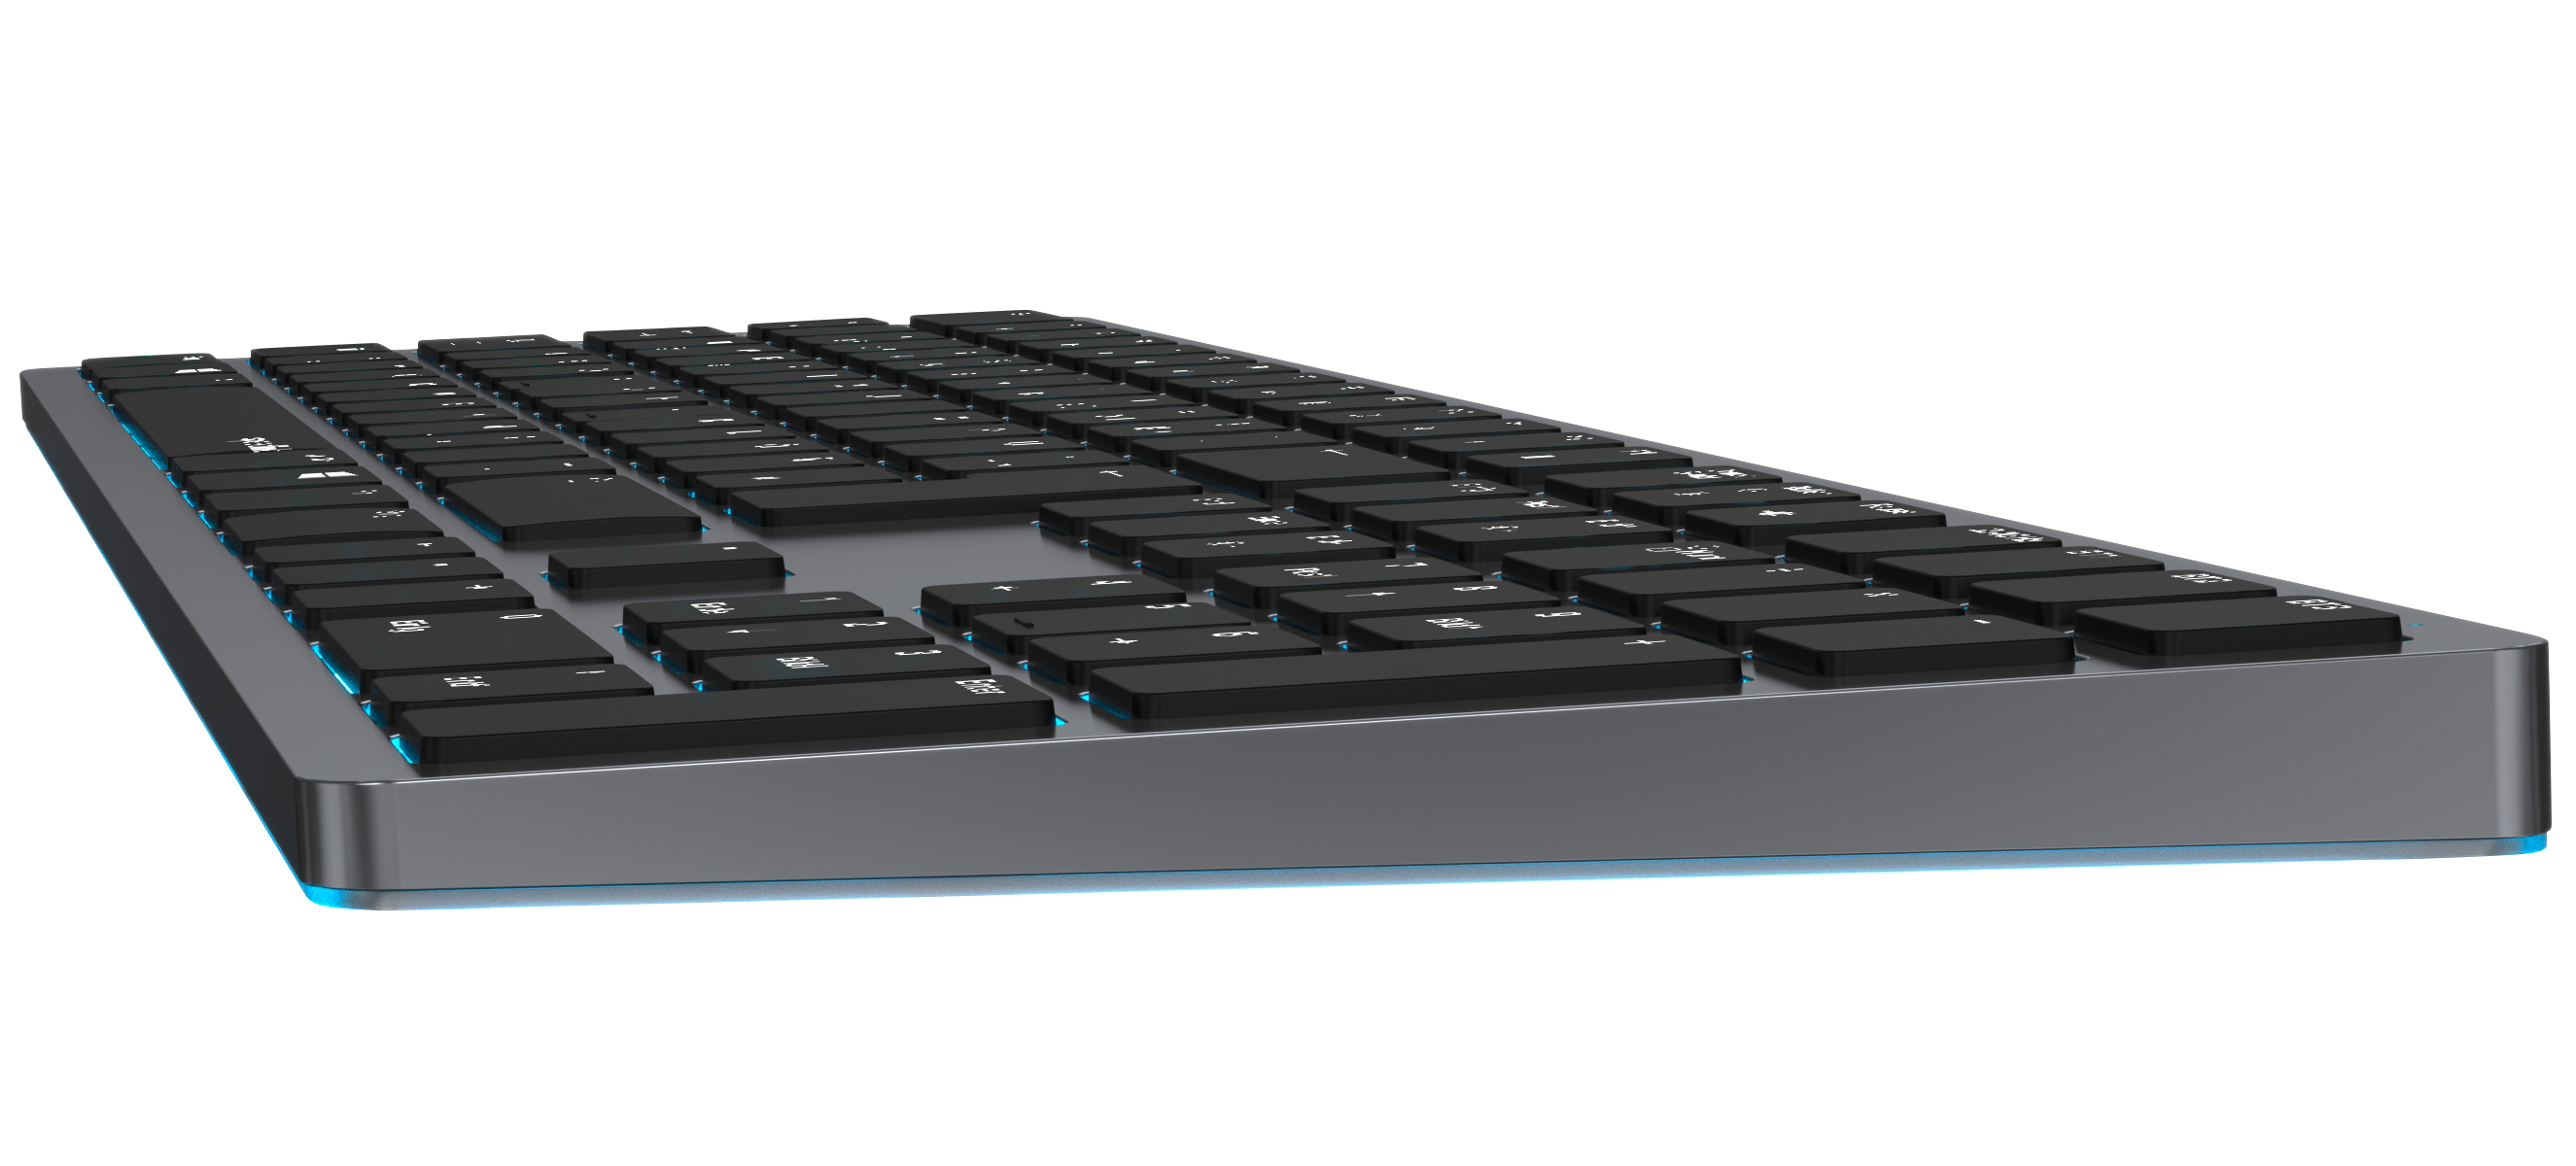 LEVIA RGB Rechargeable Metal Office Scissor Keyboard - Wireless, Bluetooth, grey - DE Layout